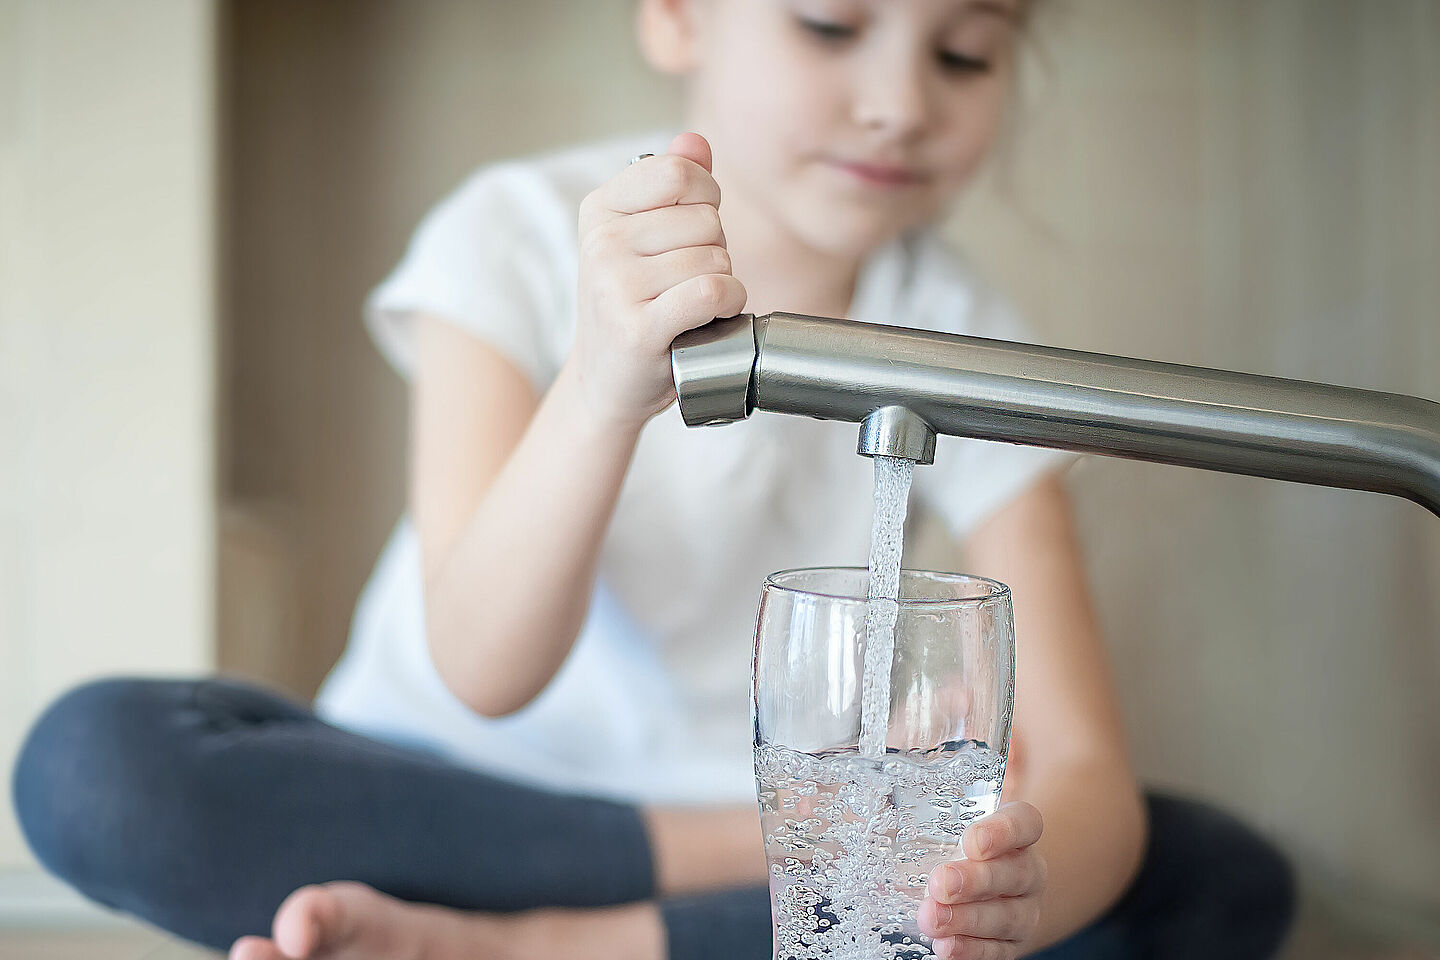 Kind zapft Trinkwasser aus Wasserhahn